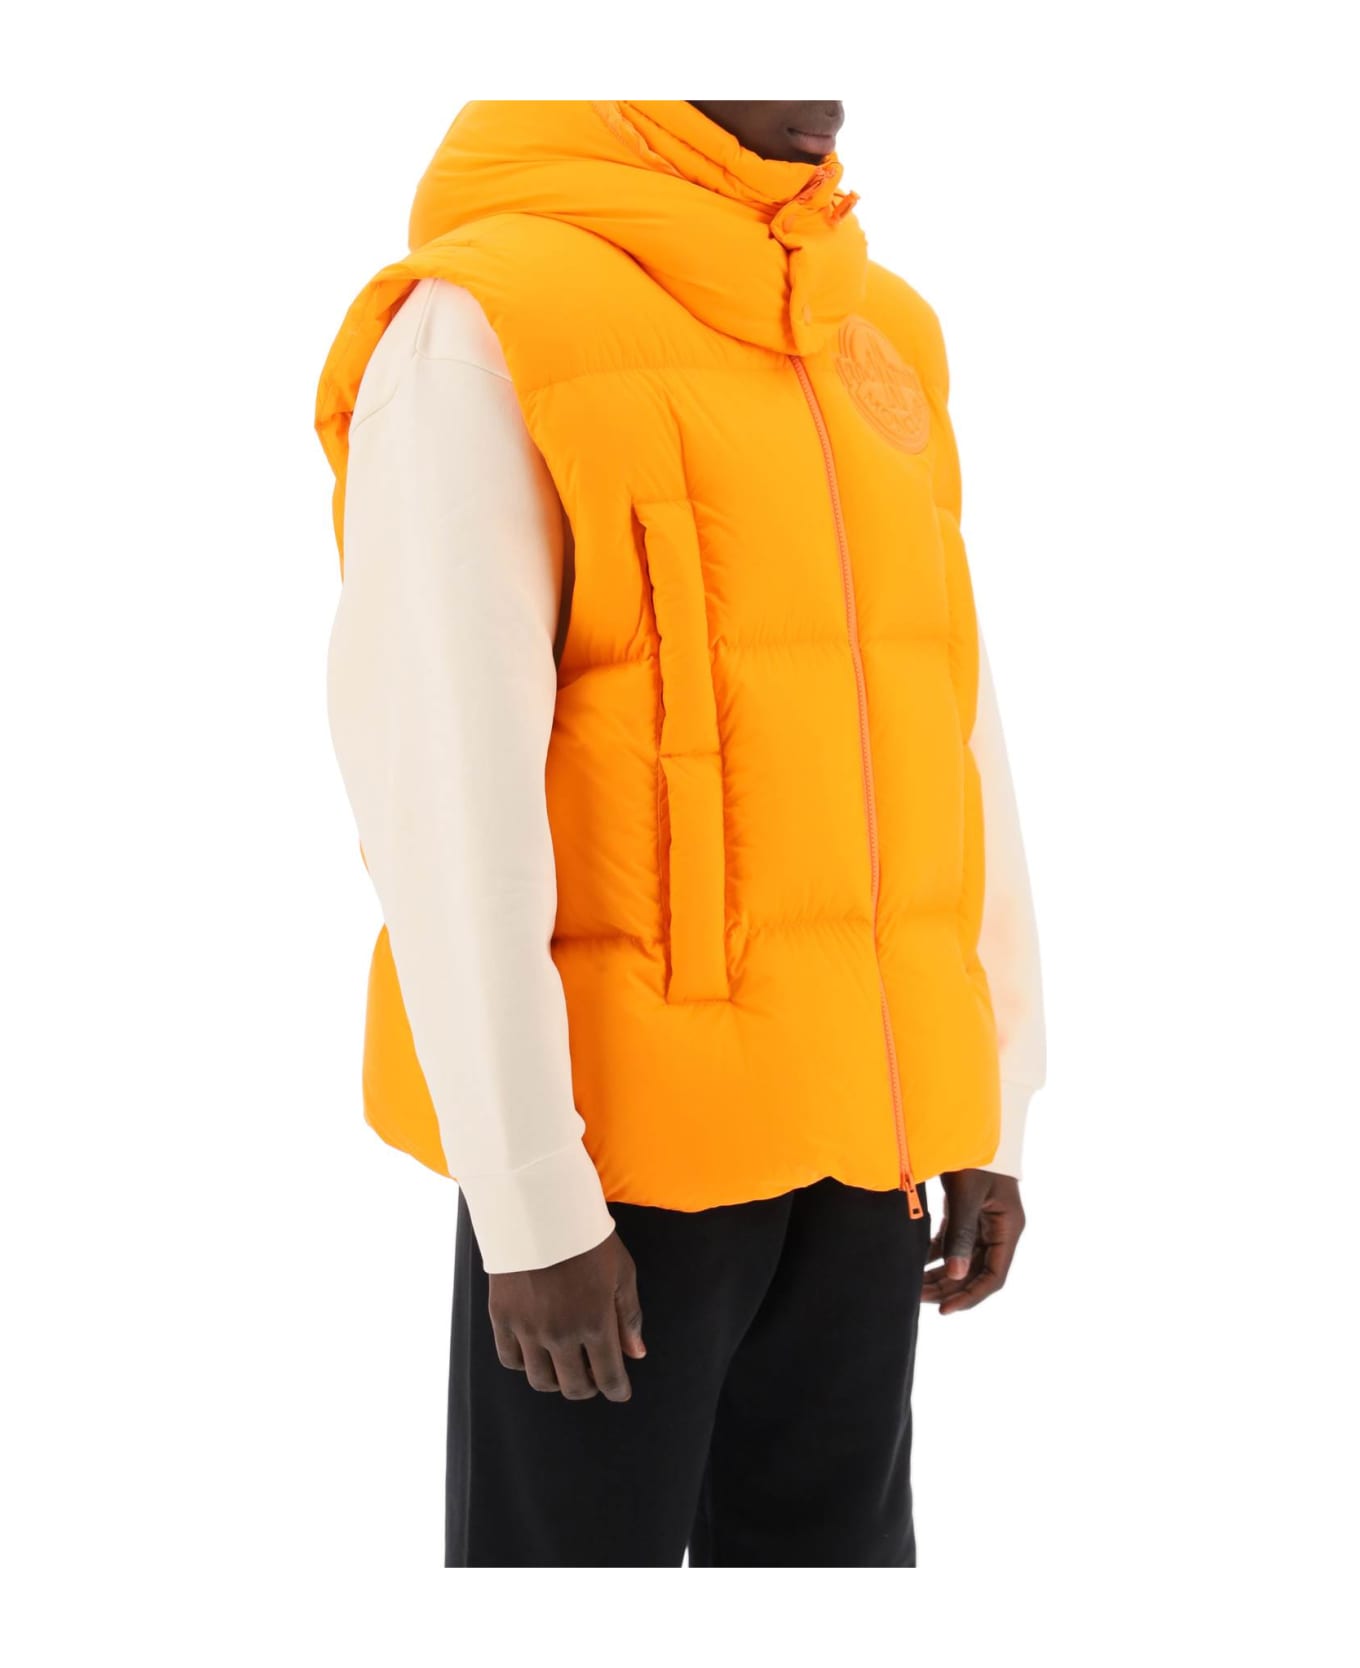 Moncler Genius Apus Puffer Vest - Orange